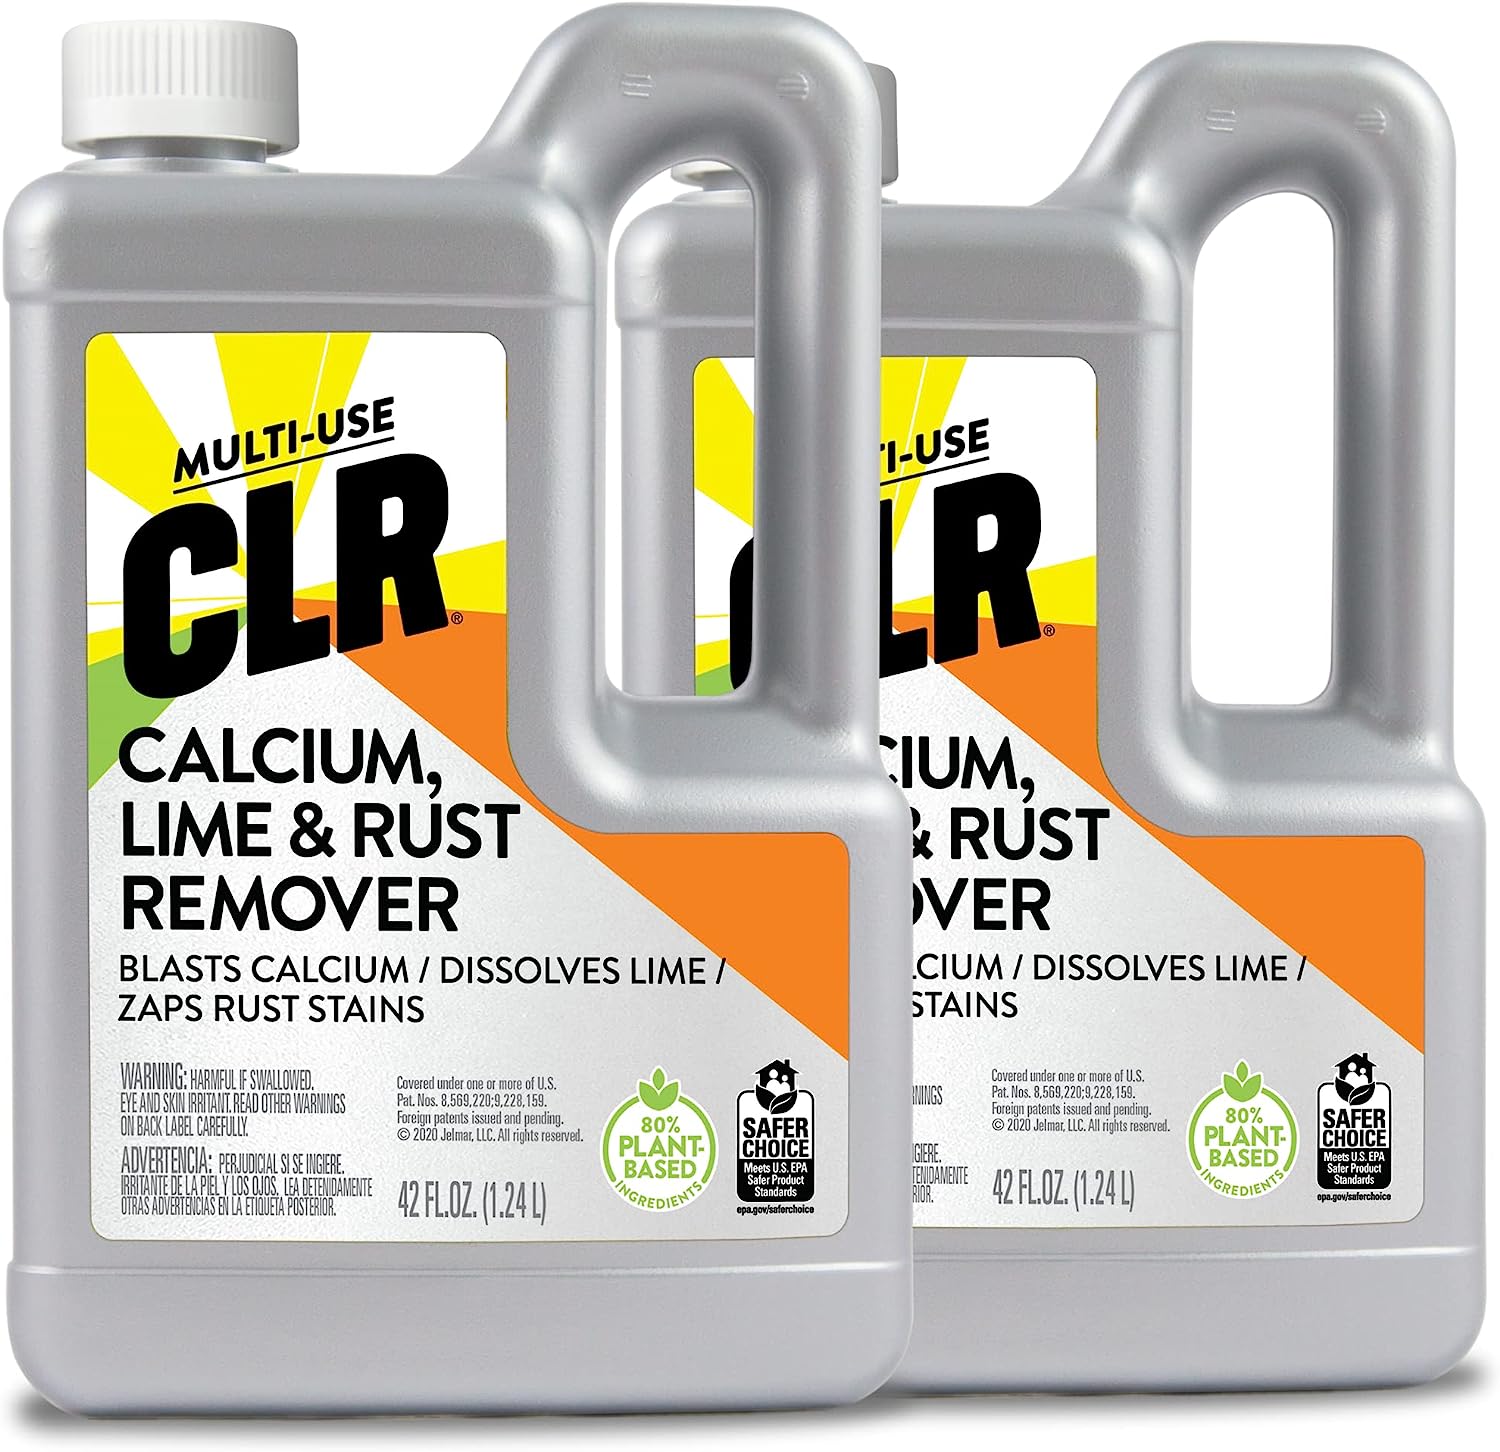 CLR Calcium, Lime & Rust Remover, Blasts Calcium, [...]